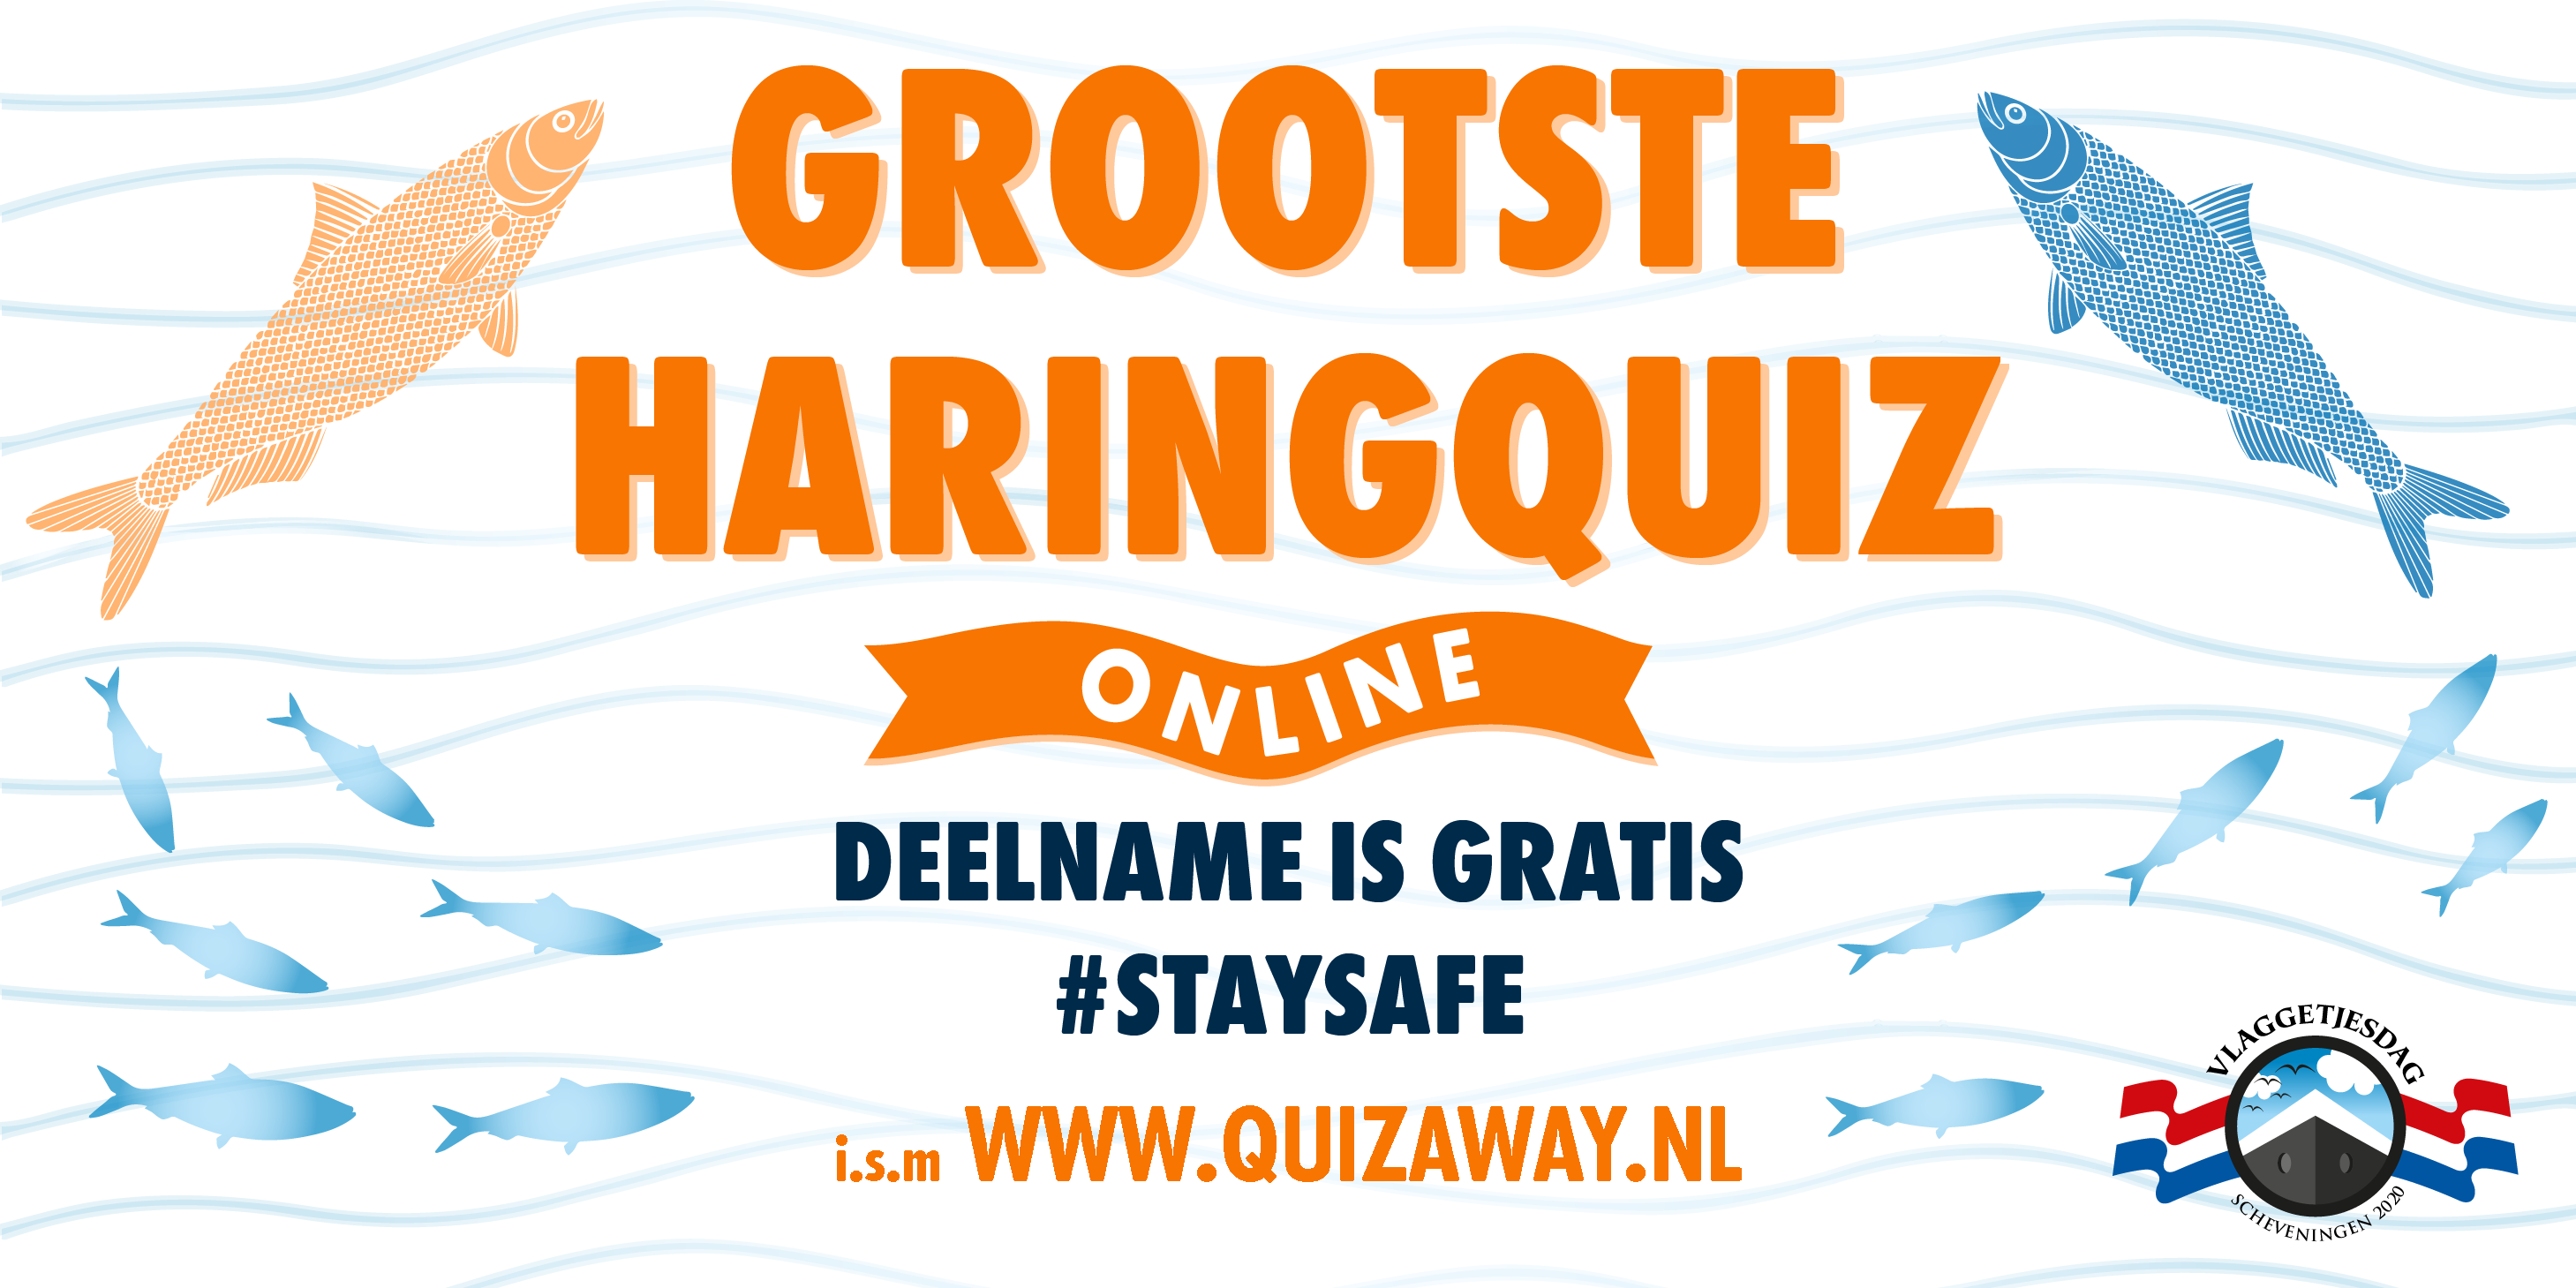 Grootste Haringquiz Online van Nederland